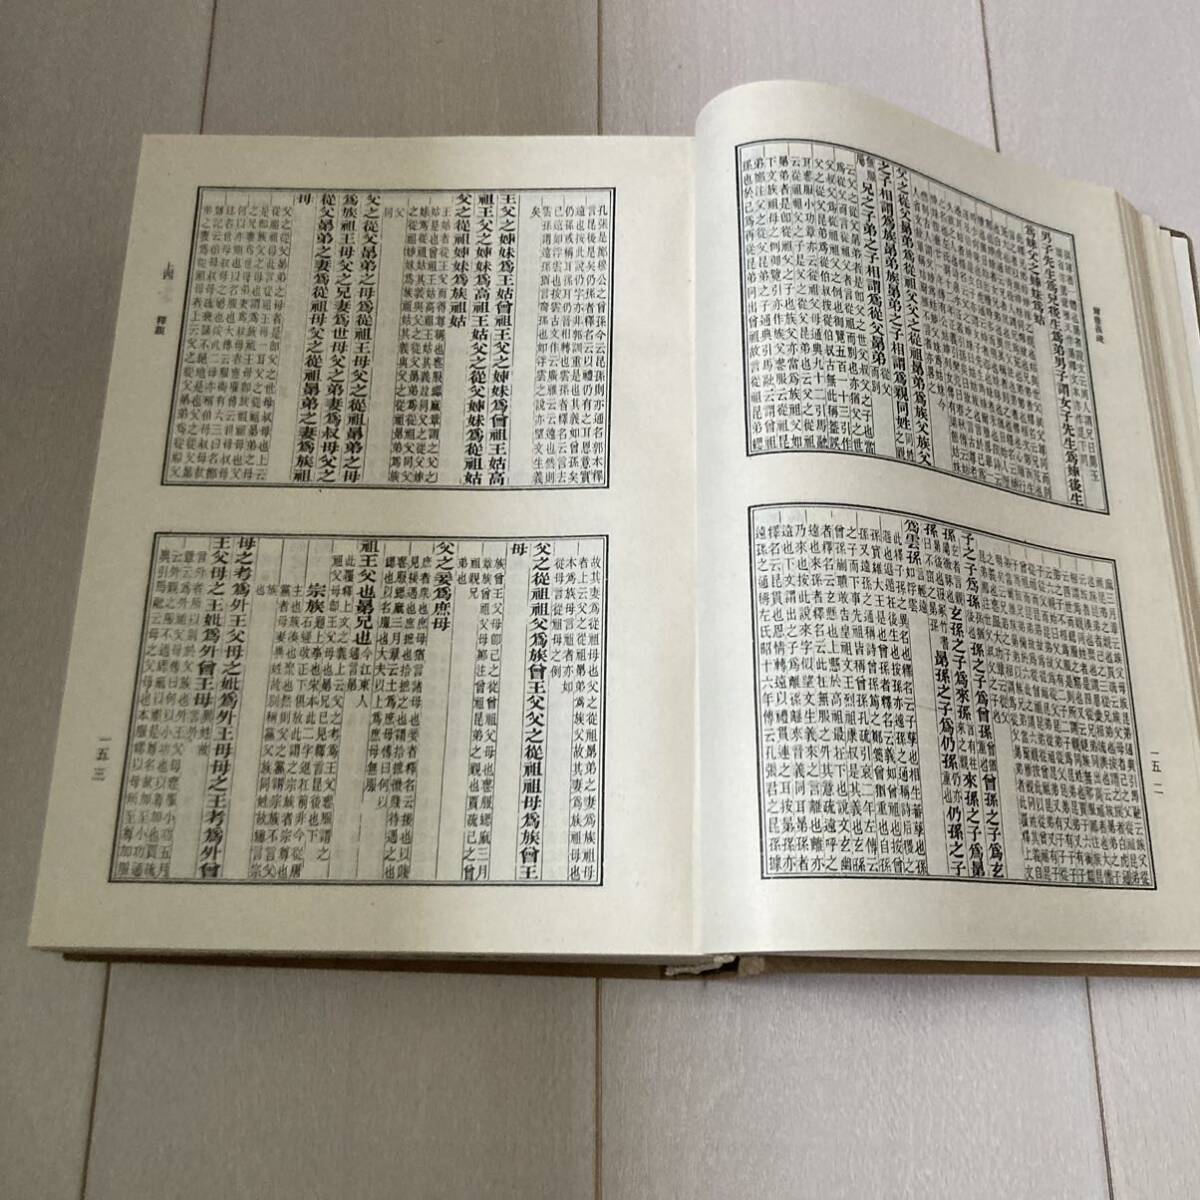 L 1989 год выпуск China Tang книга@. печать версия . оборудование книга@[.... диалект . название Kiyoshi . 4 вид ..]